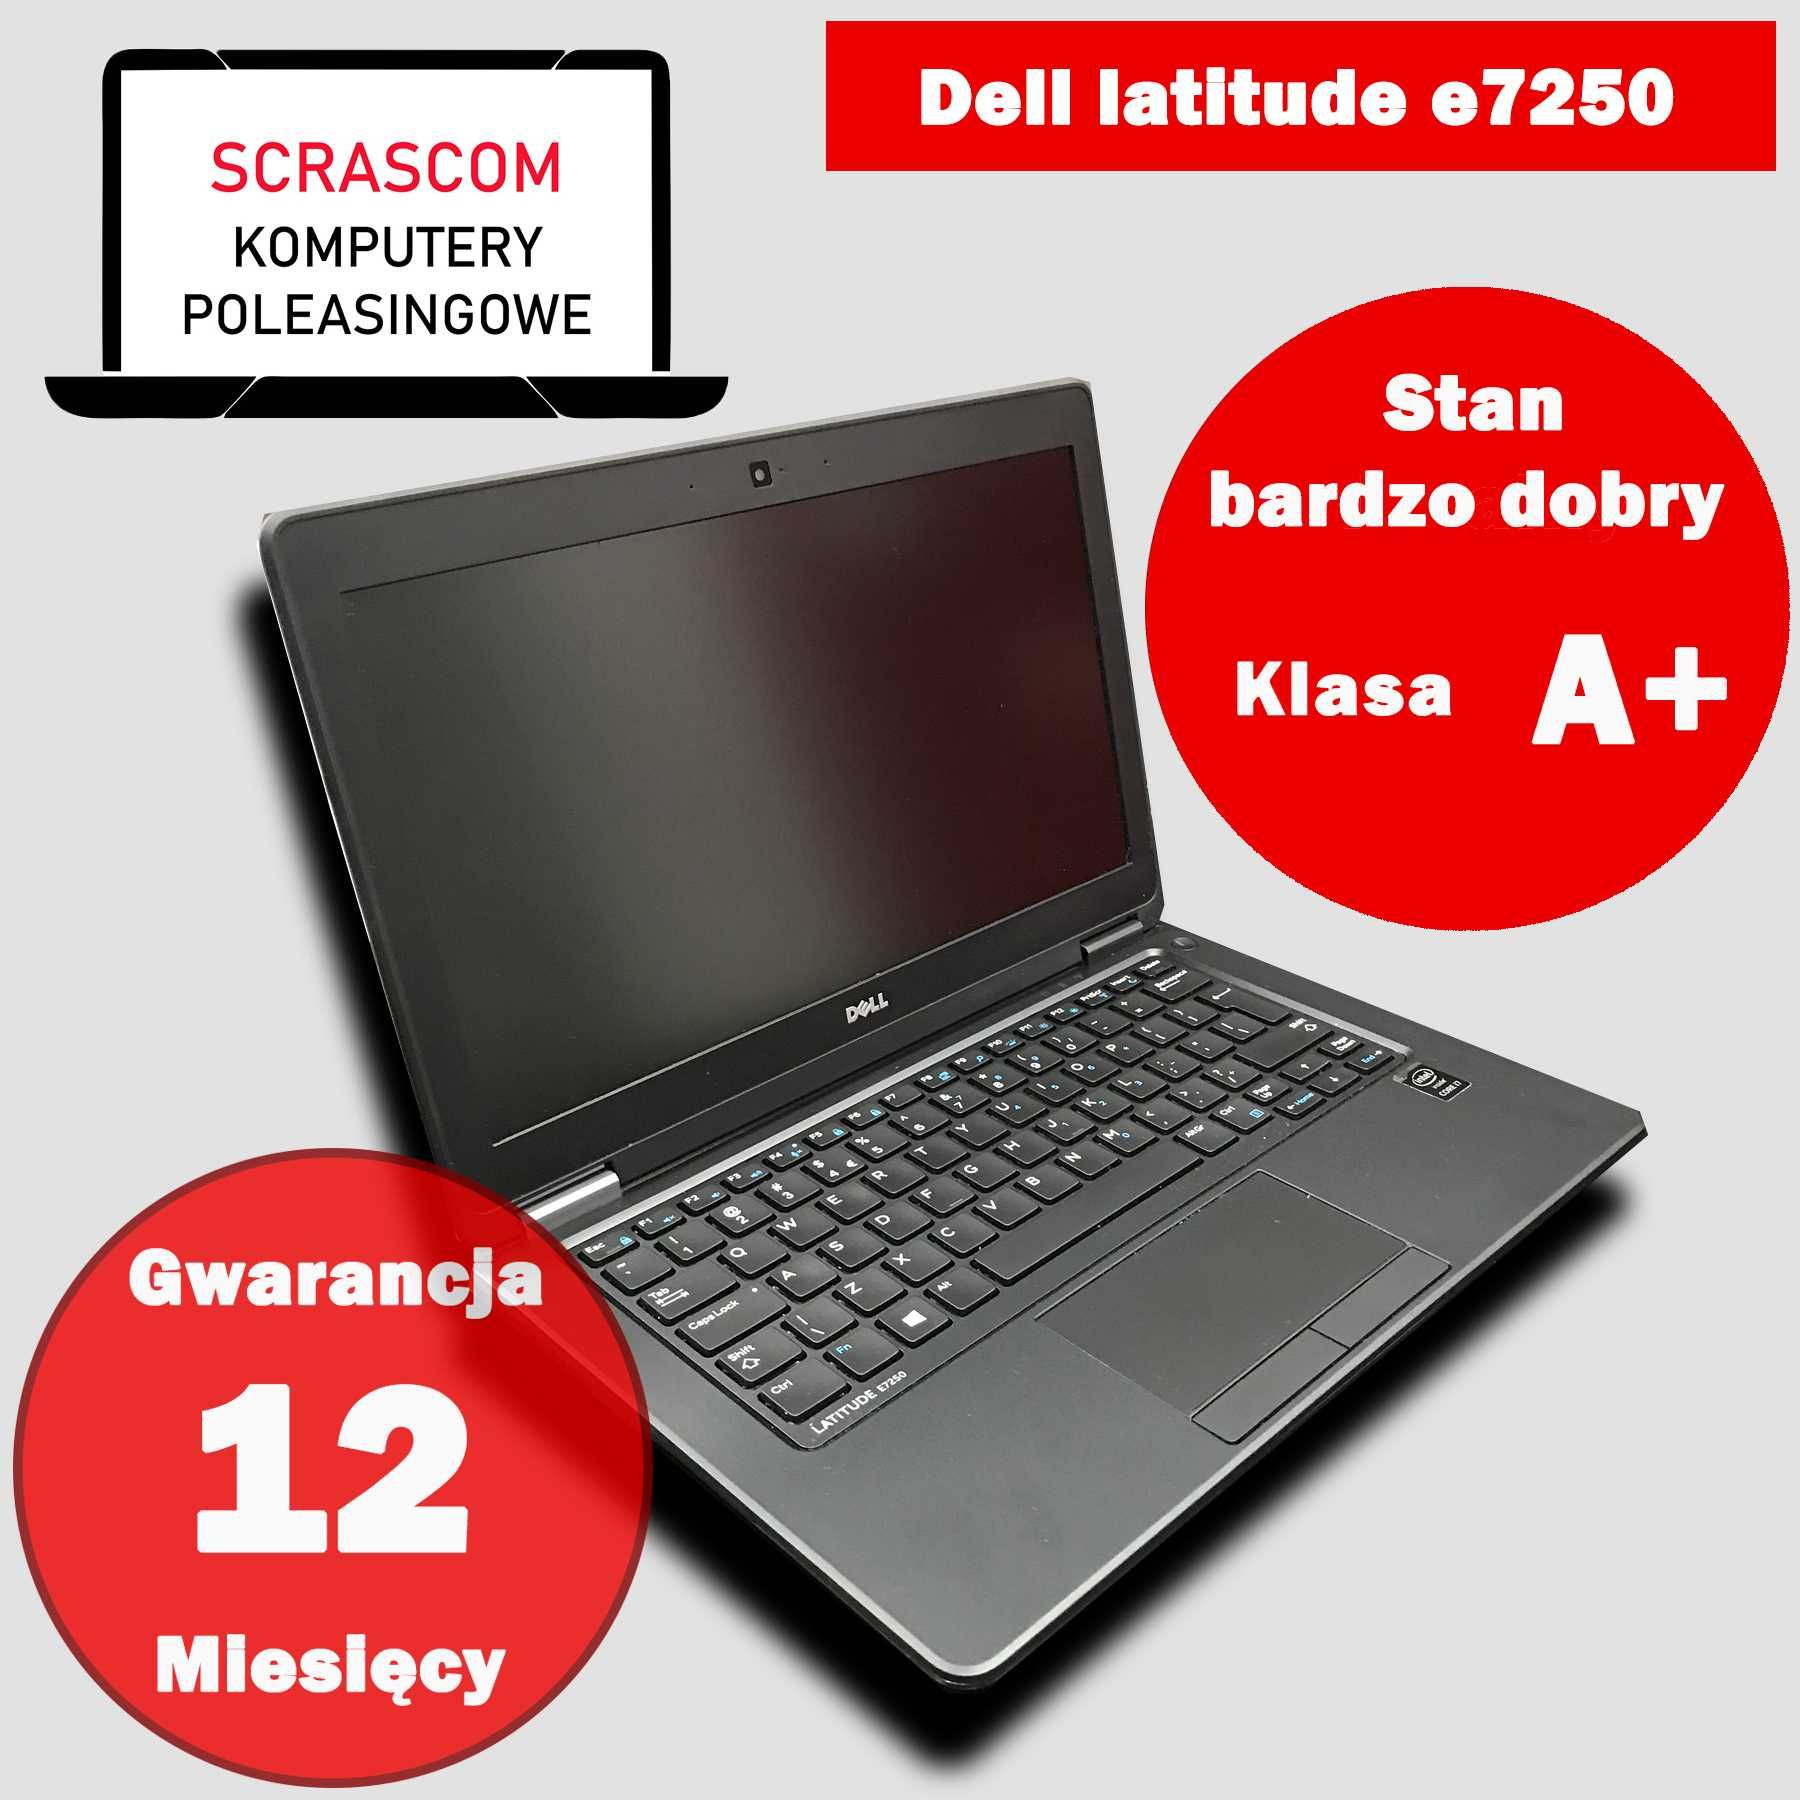 Laptop Dell latitude E7250 i5 8GB 240GB SSD Win 10 GWAR 12 msc